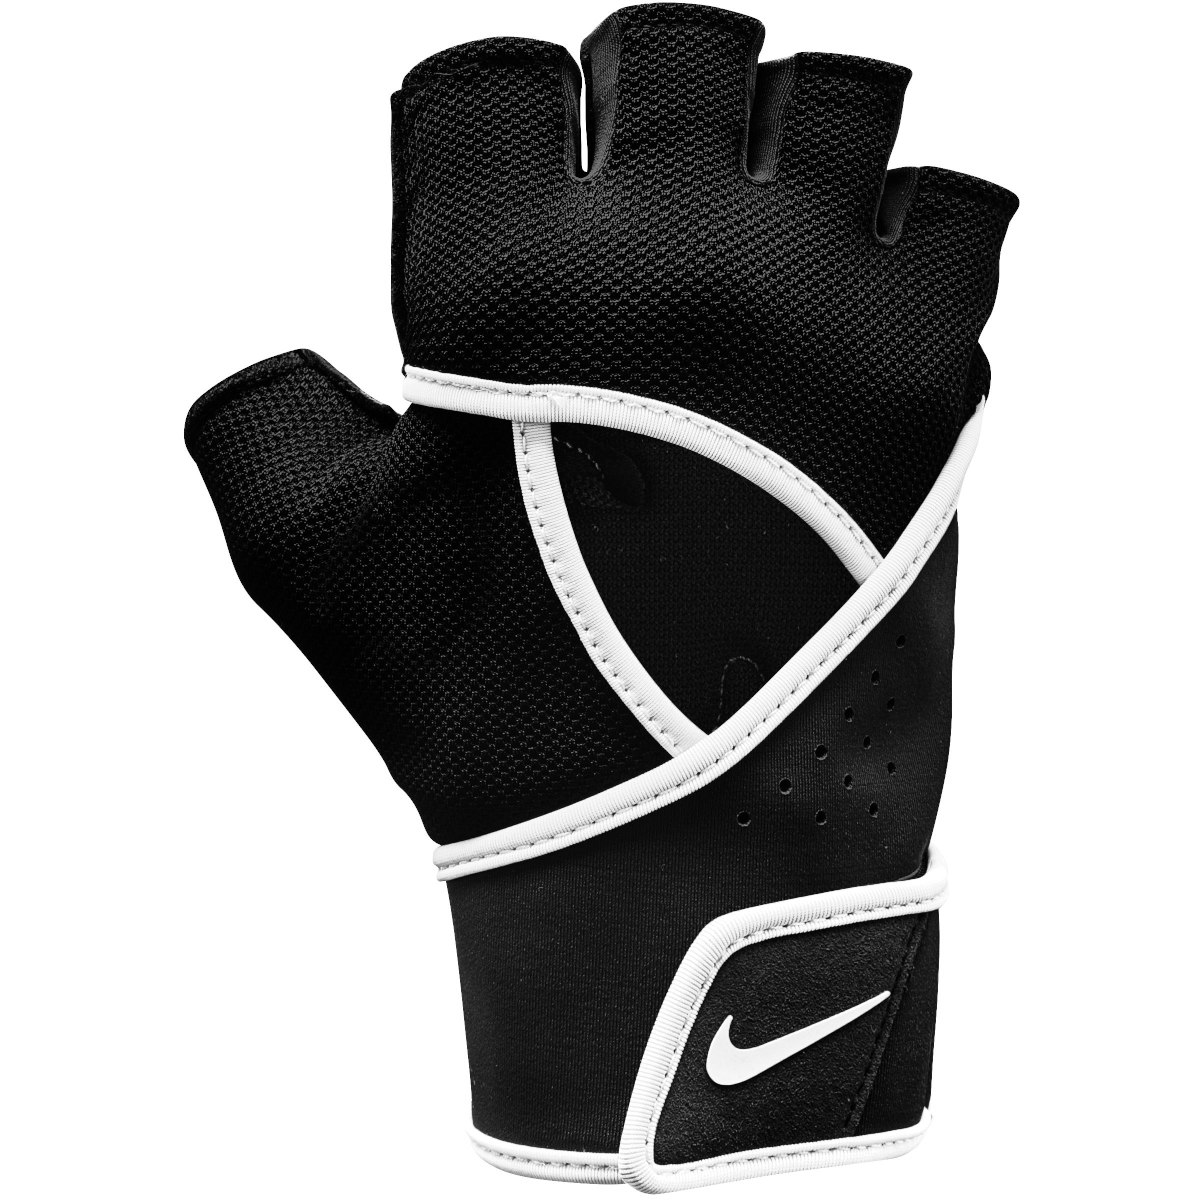 Produktbild von Nike Damen Gym Premium Fitness-Handschuhe - schwarz/weiß 010